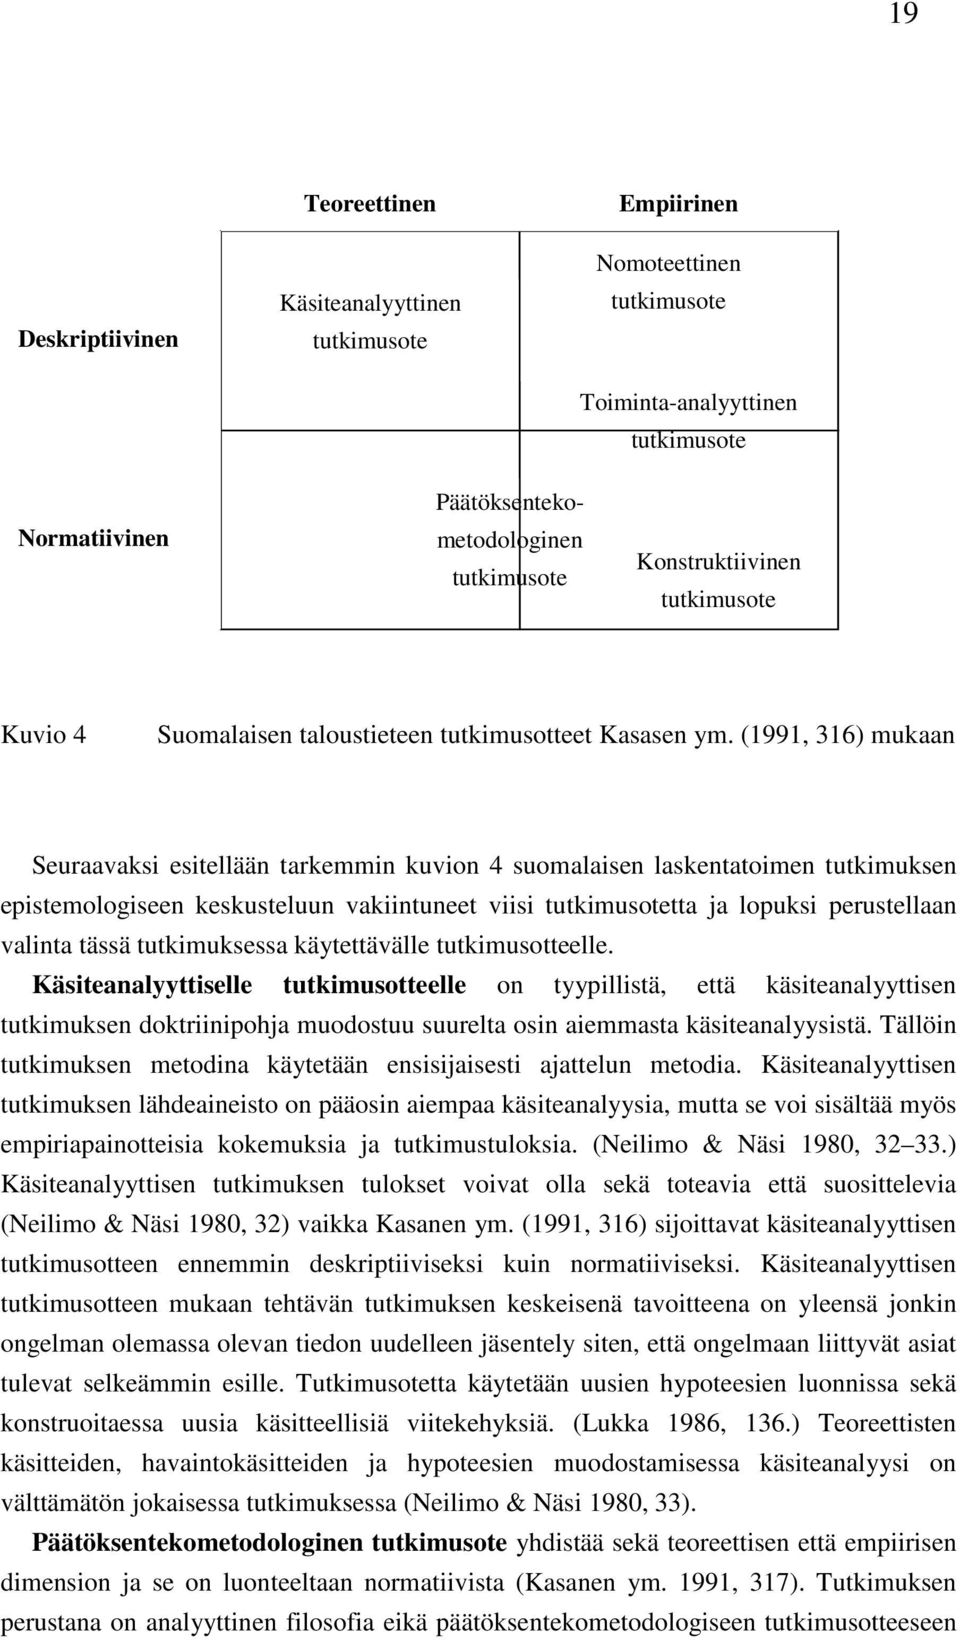 (1991, 316) mukaan Seuraavaksi esitellään tarkemmin kuvion 4 suomalaisen laskentatoimen tutkimuksen epistemologiseen keskusteluun vakiintuneet viisi tutkimusotetta ja lopuksi perustellaan valinta